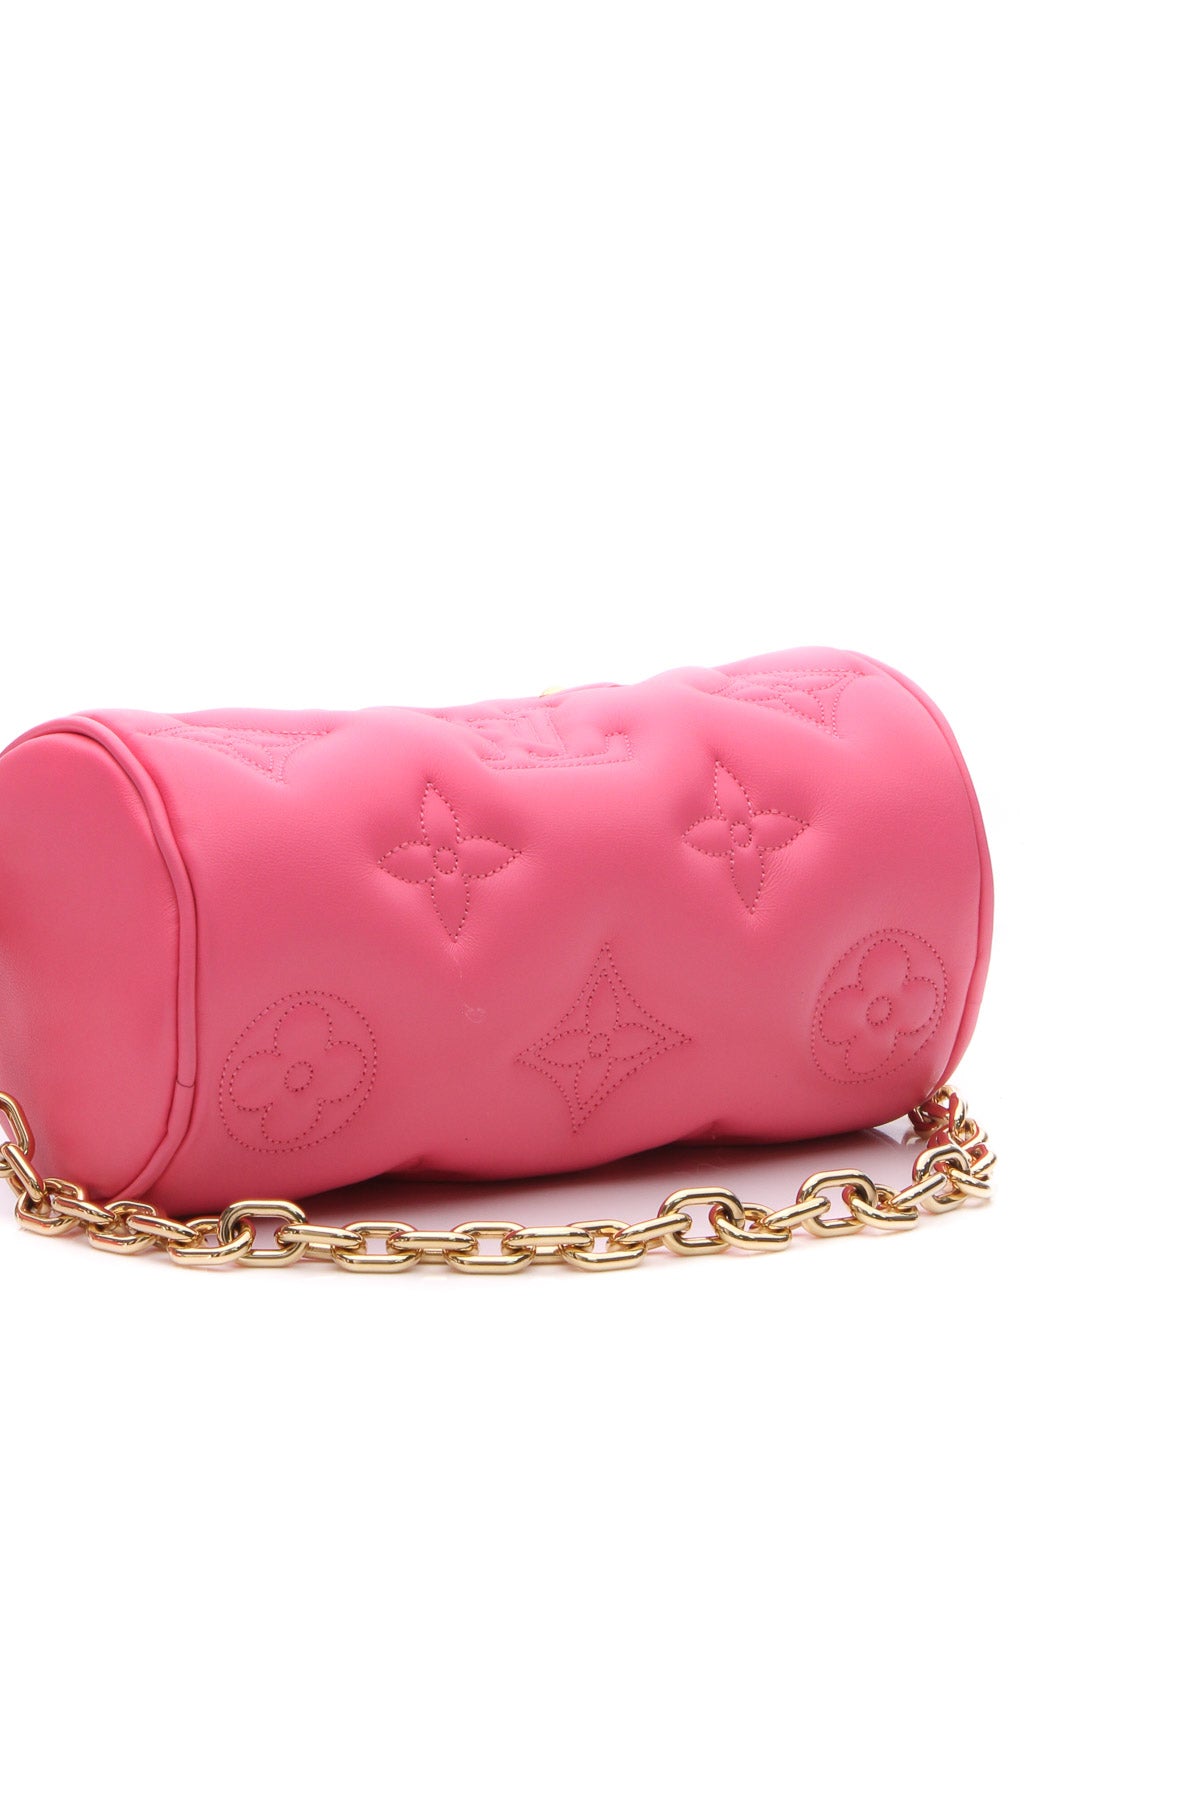 LOUIS VUITTON Bubblegram Papillon BB gold buckle handle shoulder bag pink